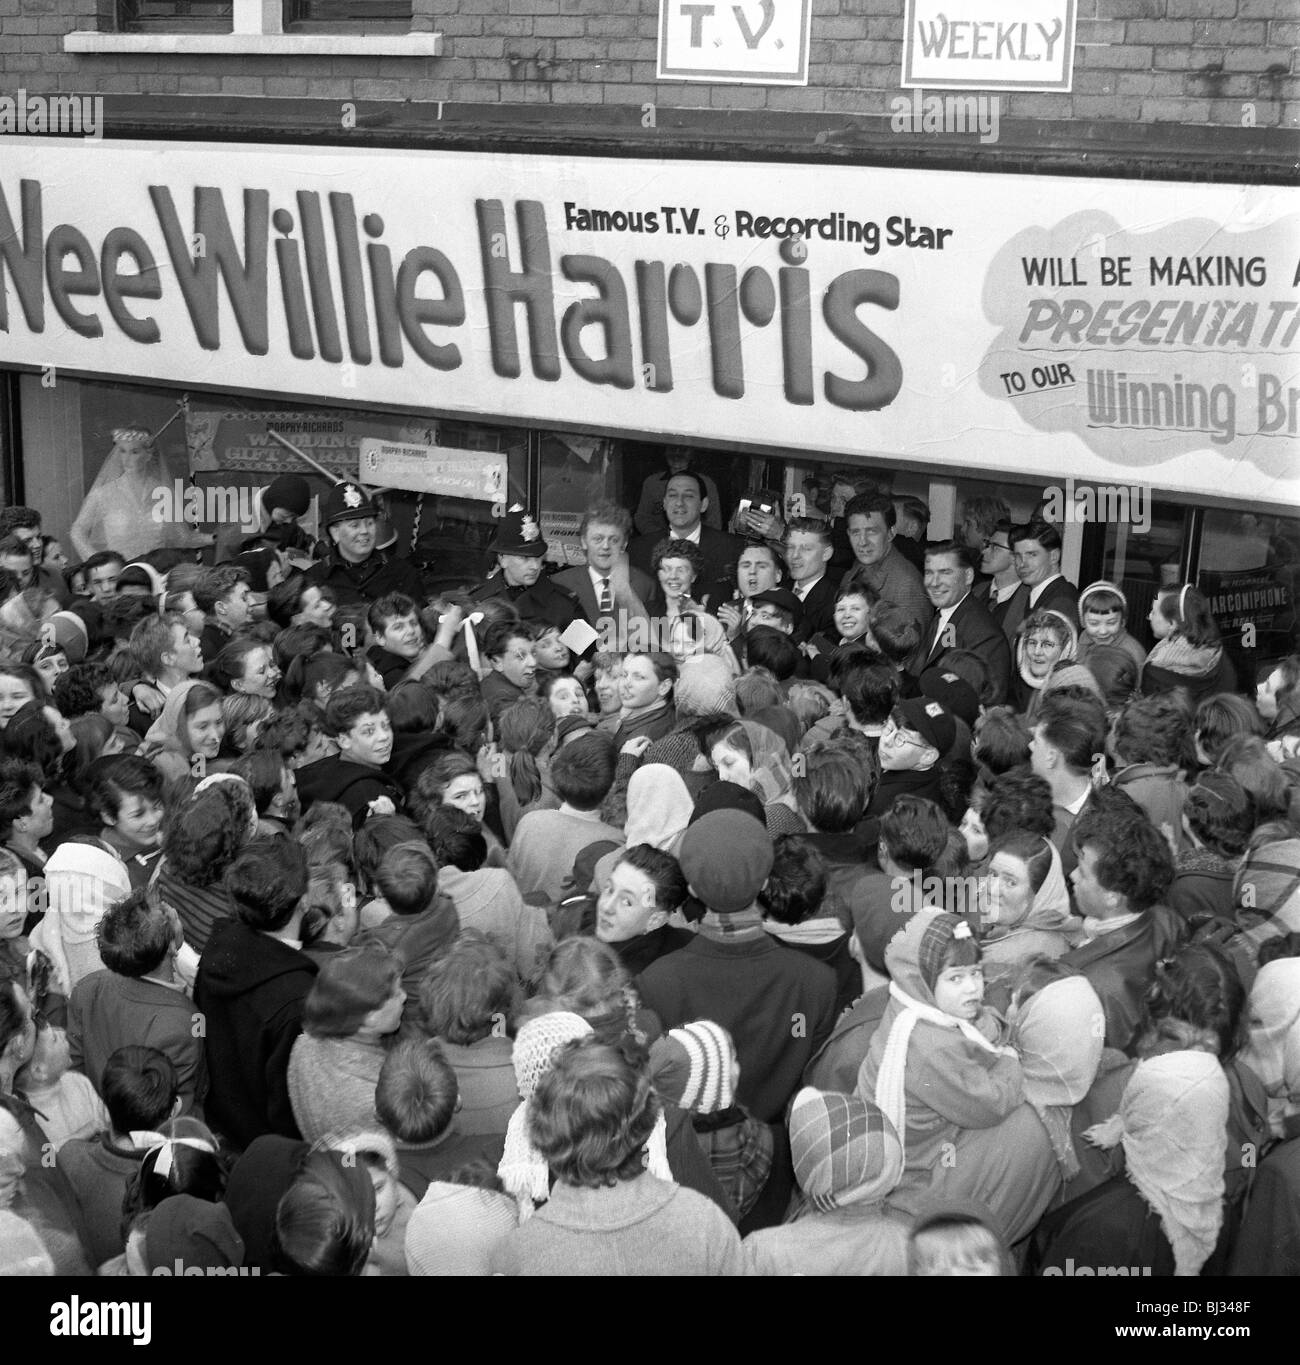 Televisore e registrazione star 'Wee Willie' Harris visiti South Yorkshire, 1958. Artista: Michael Walters Foto Stock